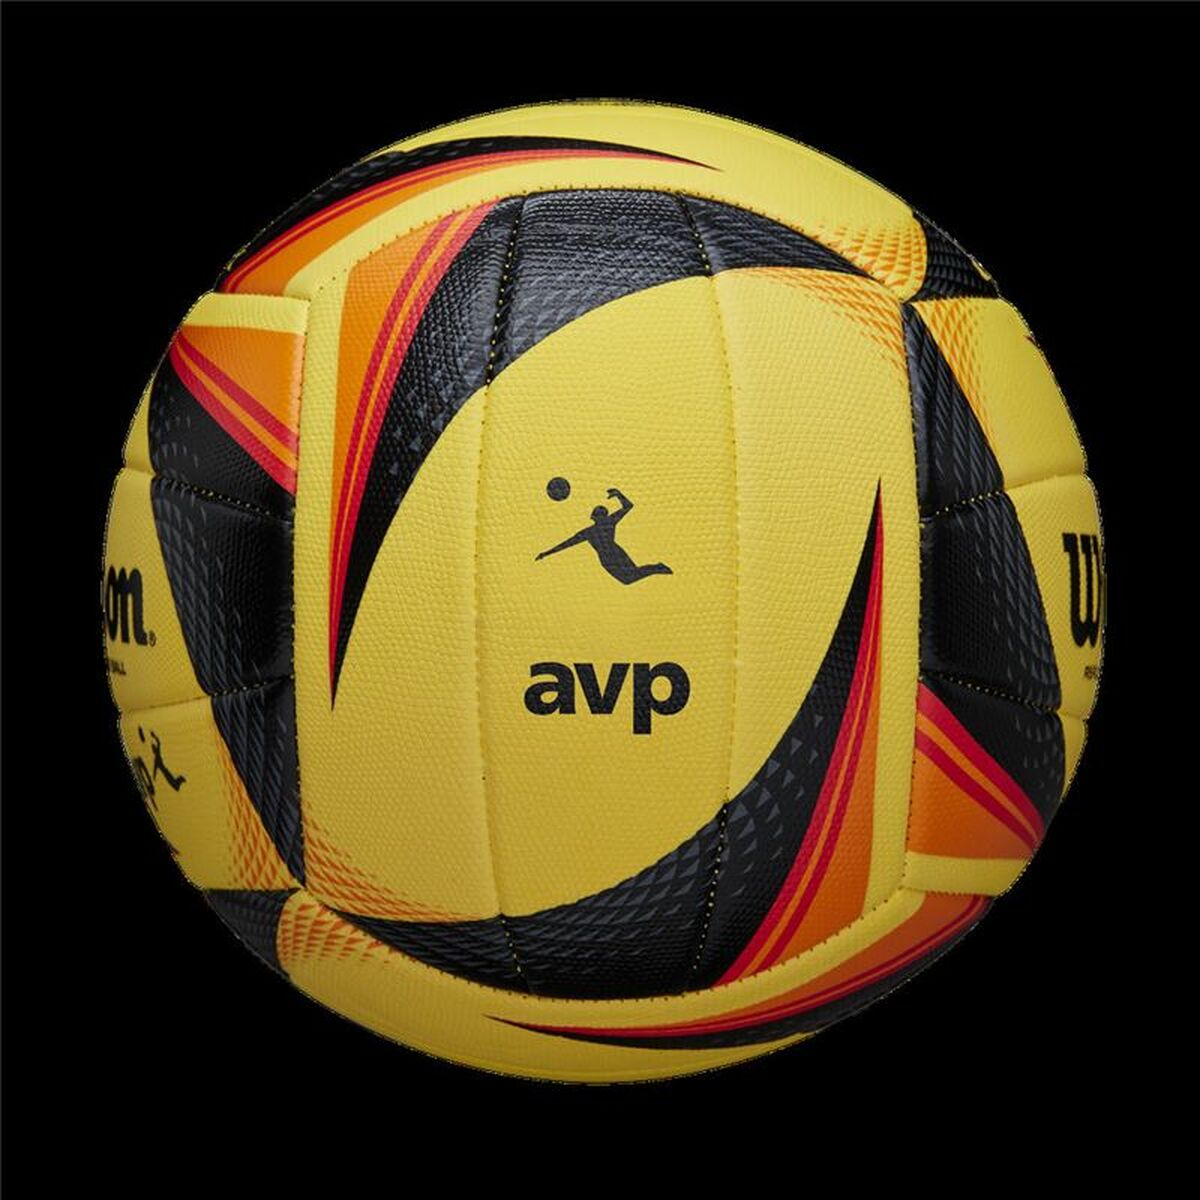 Pallone da Pallavolo Wilson AVP Optx Replica Dorato